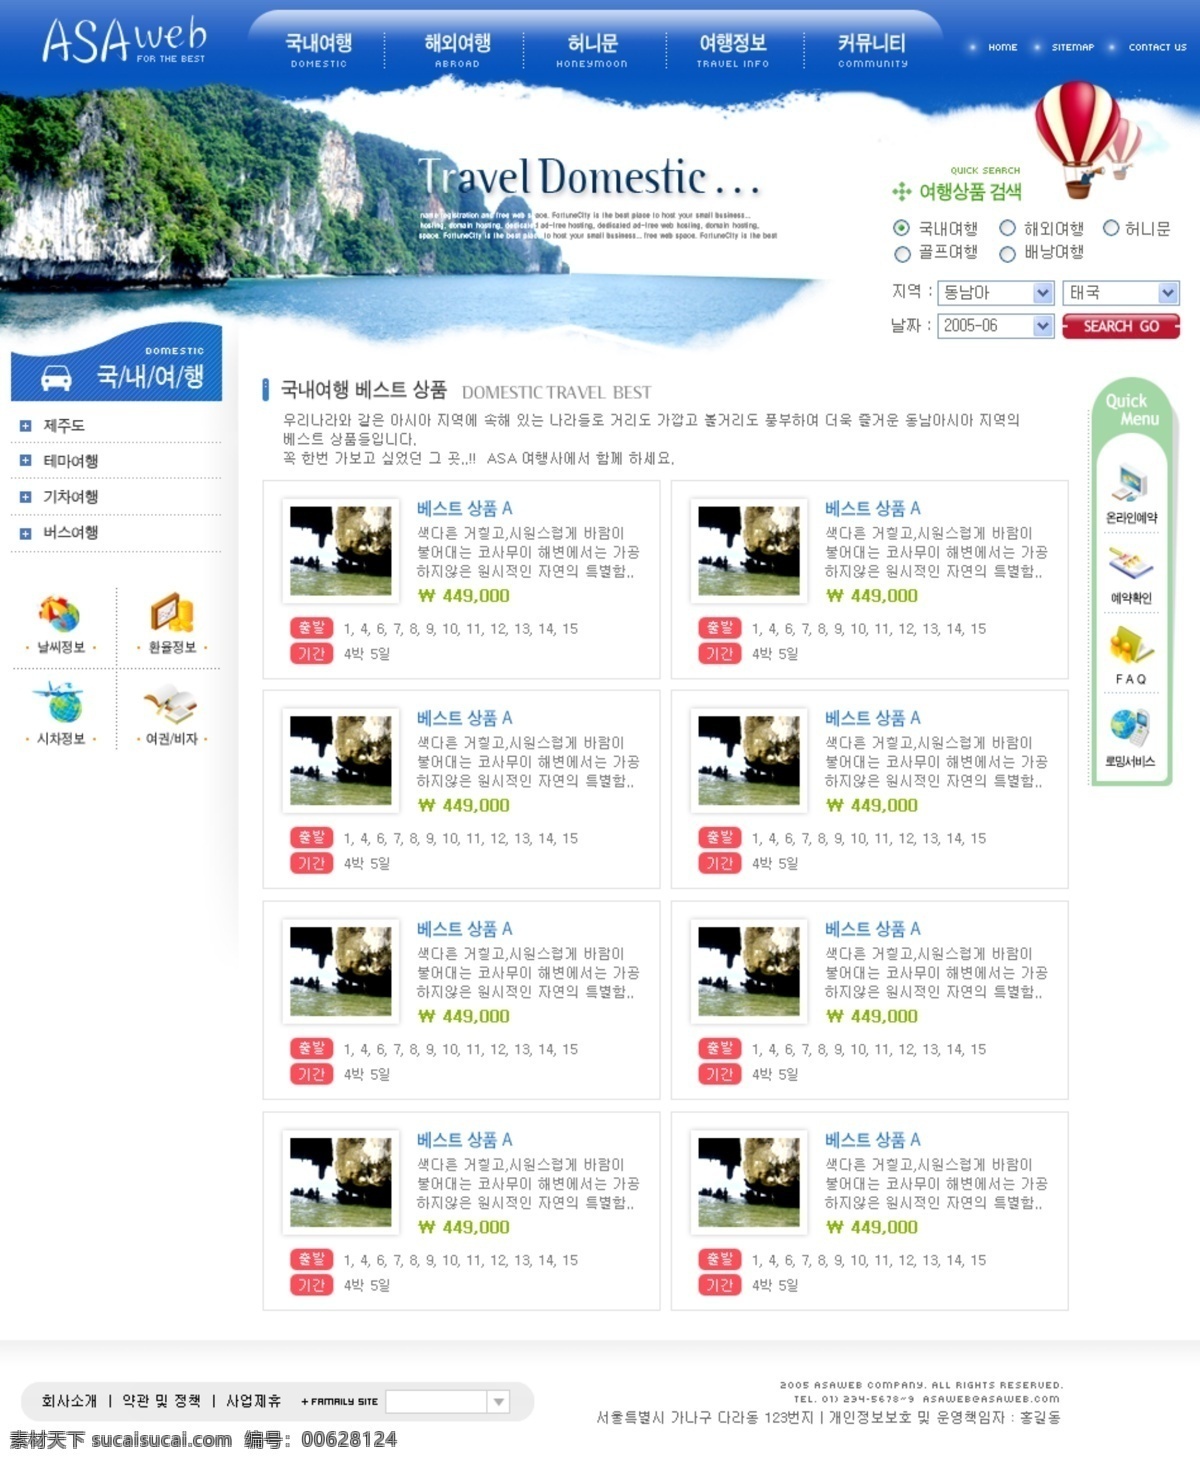 旅游 网页模板 韩国 韩国模板 界面 旅游网页模板 模板 网页 源文件库 网页素材